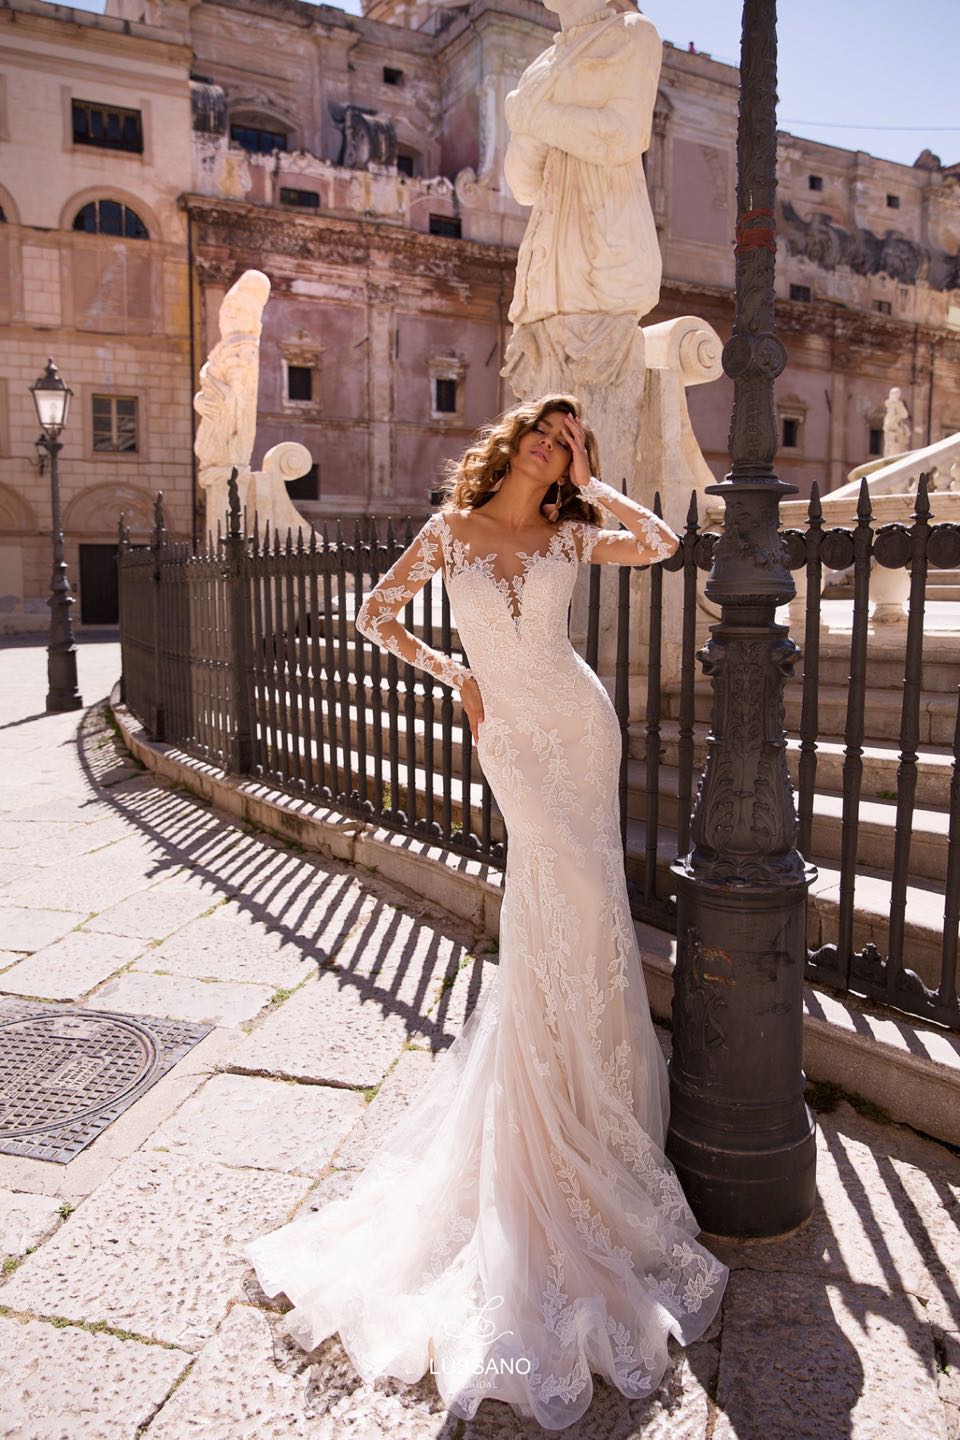 Свадебное платье Lussano 2019